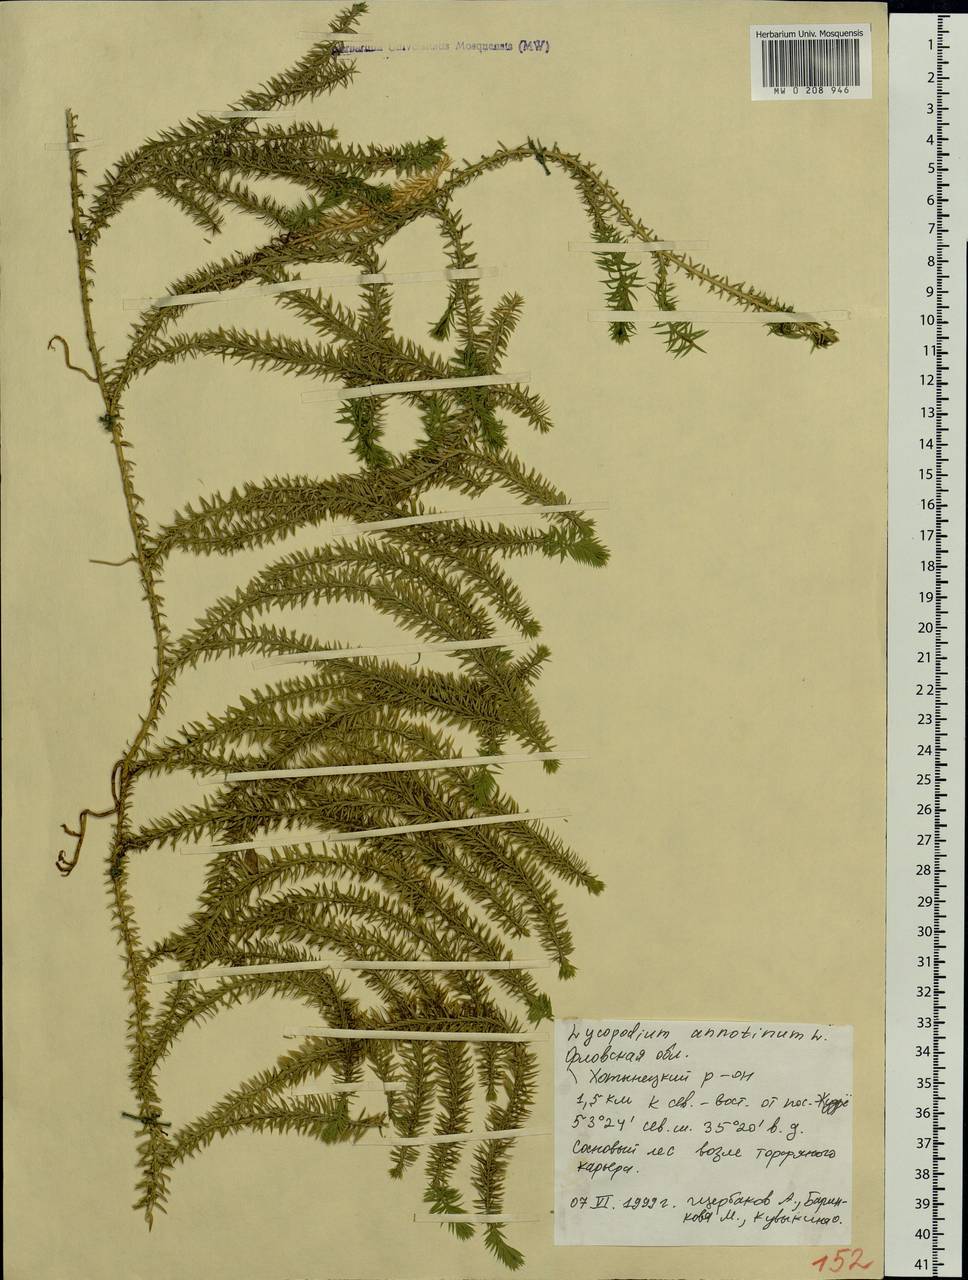 Spinulum annotinum subsp. annotinum, Восточная Европа, Центральный лесостепной район (E6) (Россия)